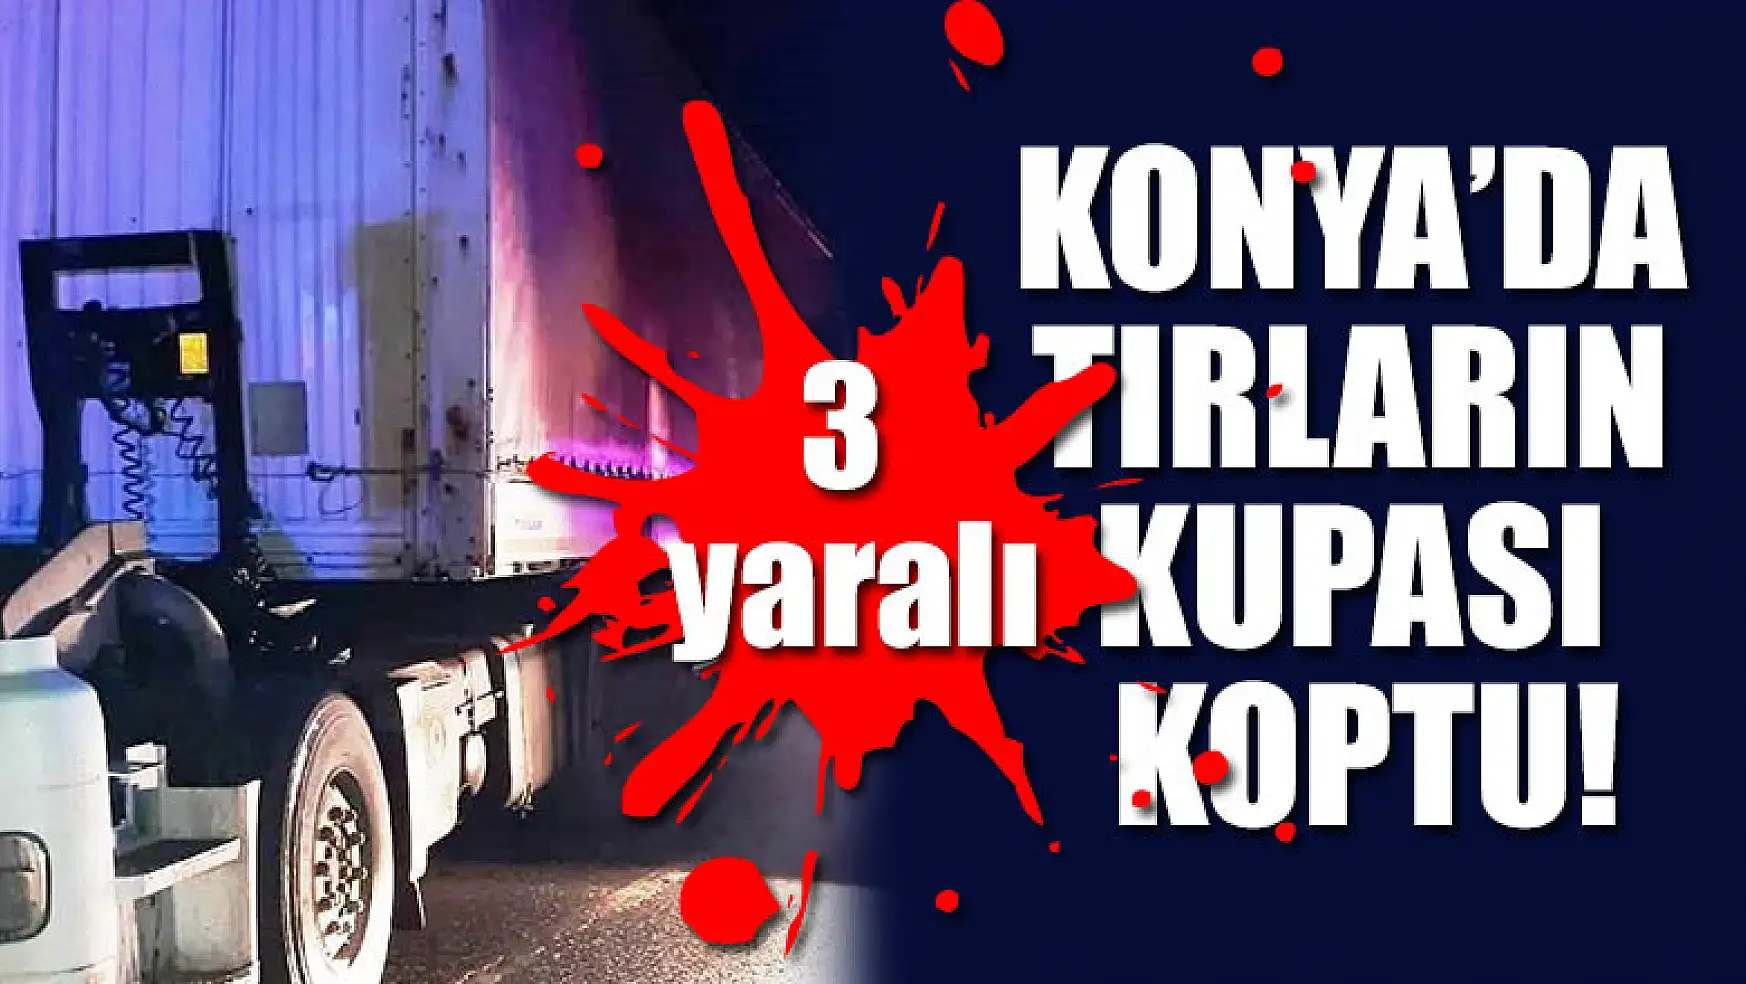 Konya'da tırların kupası koptu: 3 yaralı